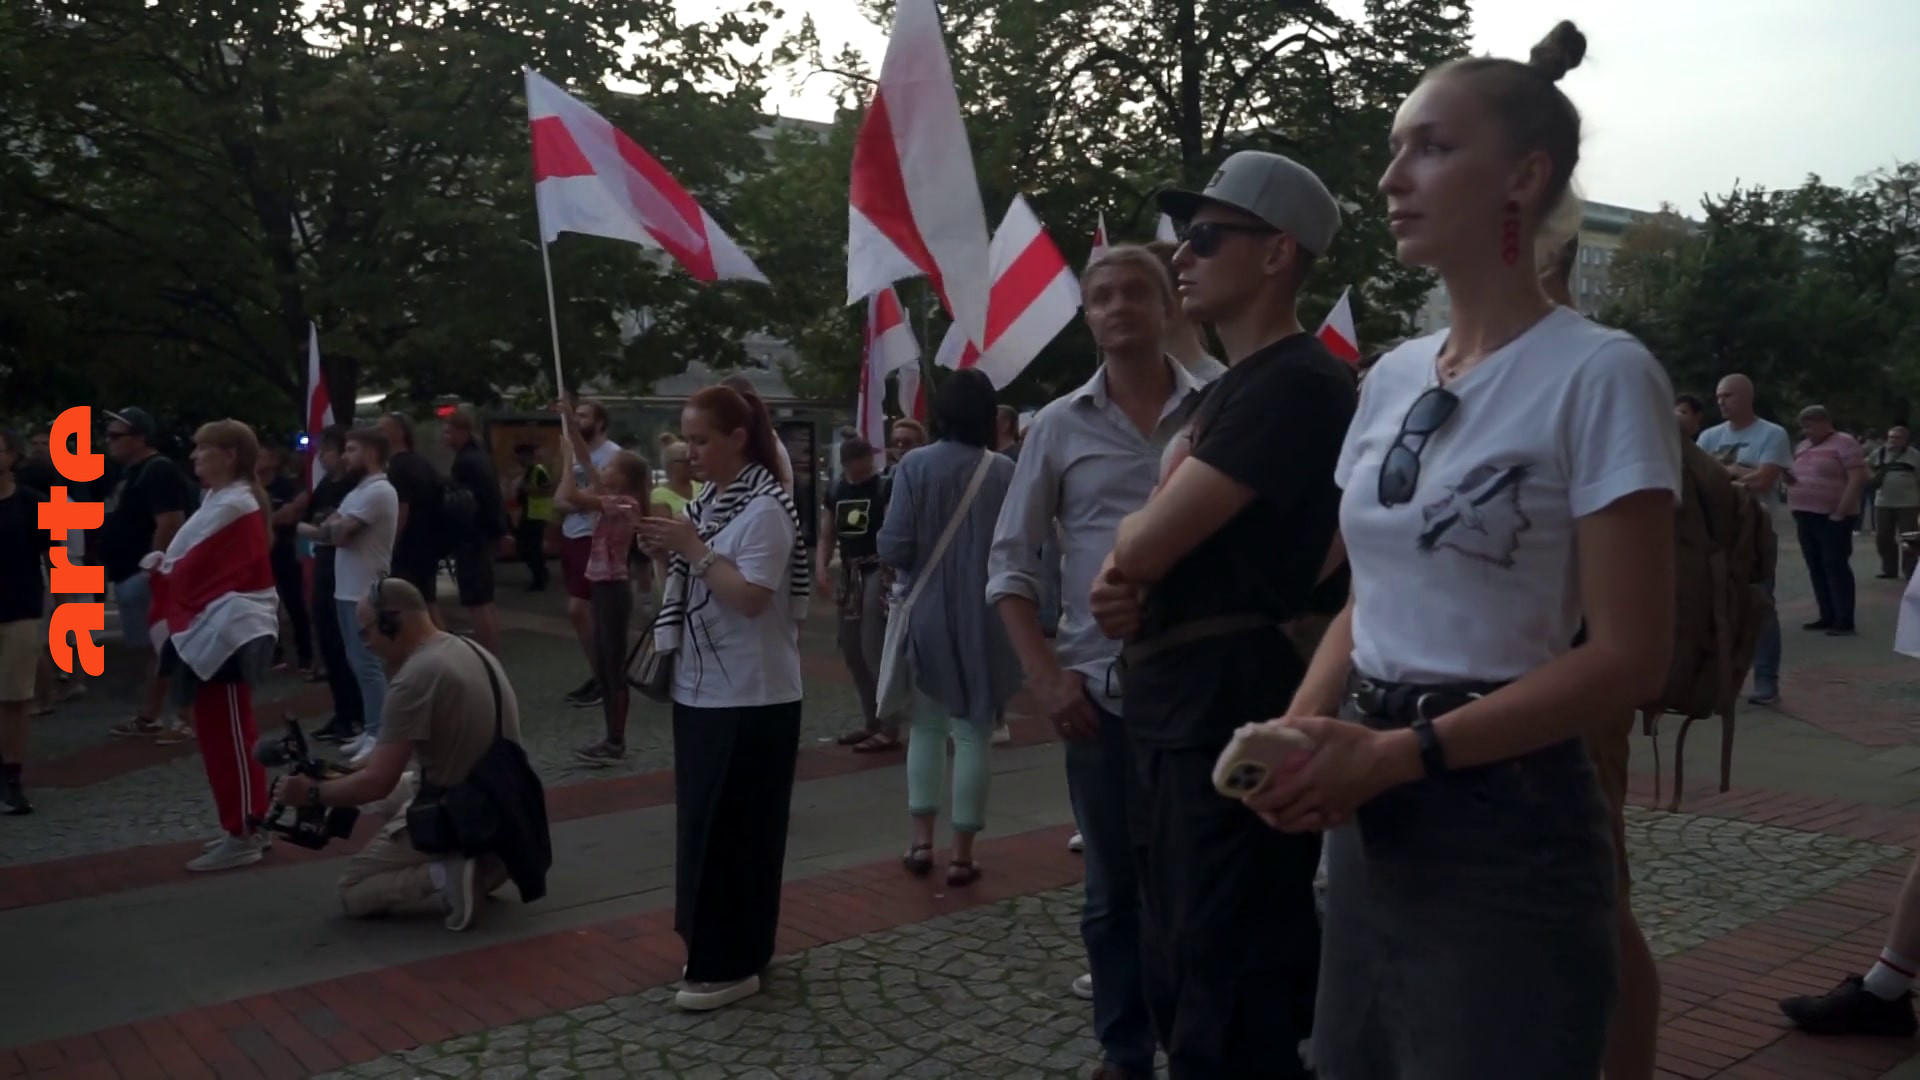 Polen: Belarussische Oppositionelle im Exil